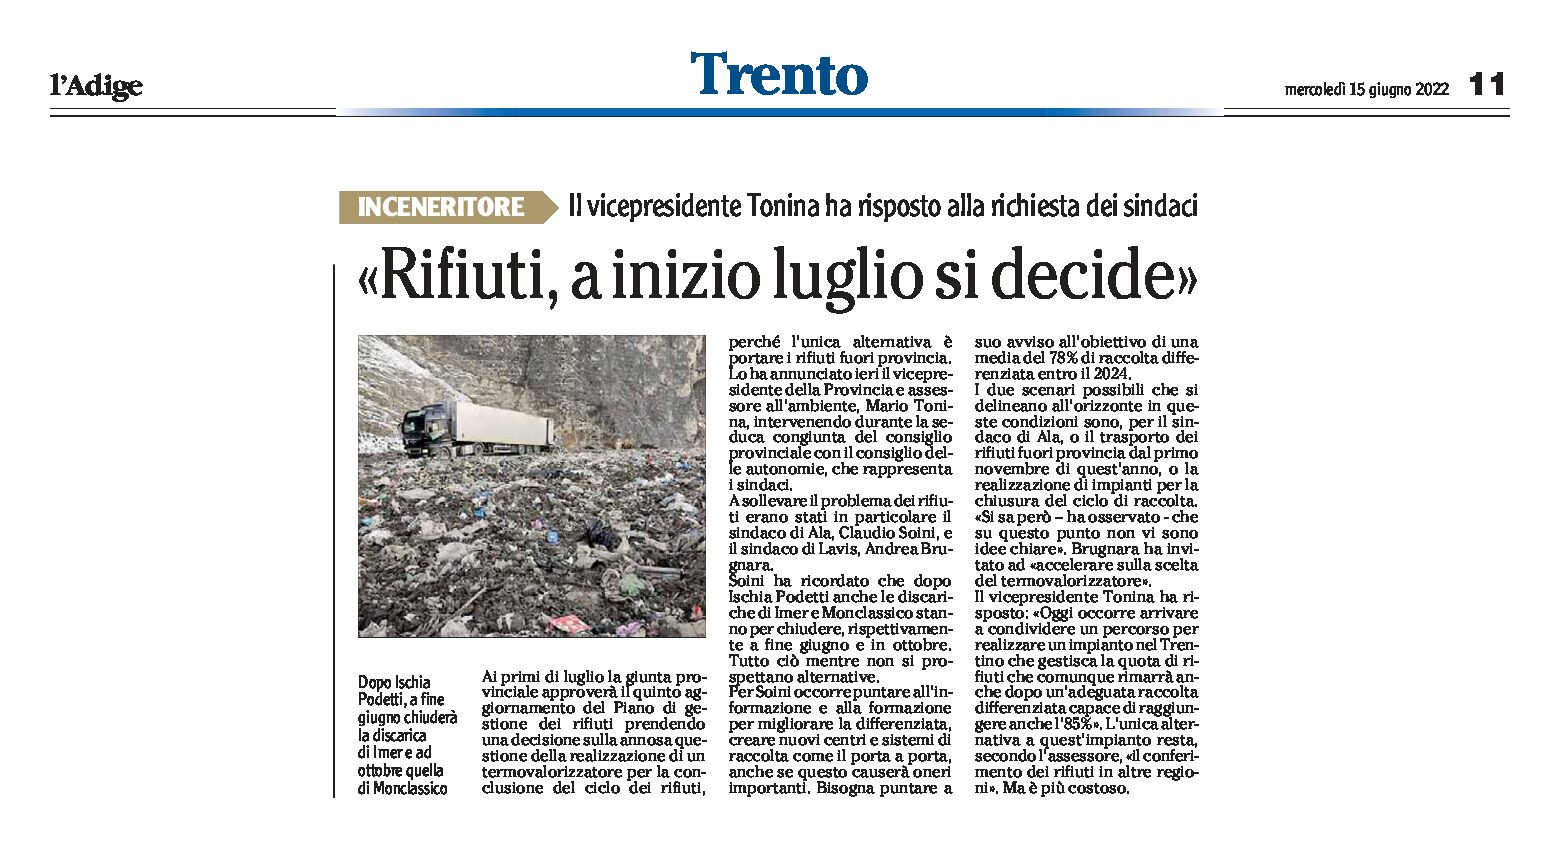 Trentino, rifiuti: Tonina “a inizio luglio si decide”